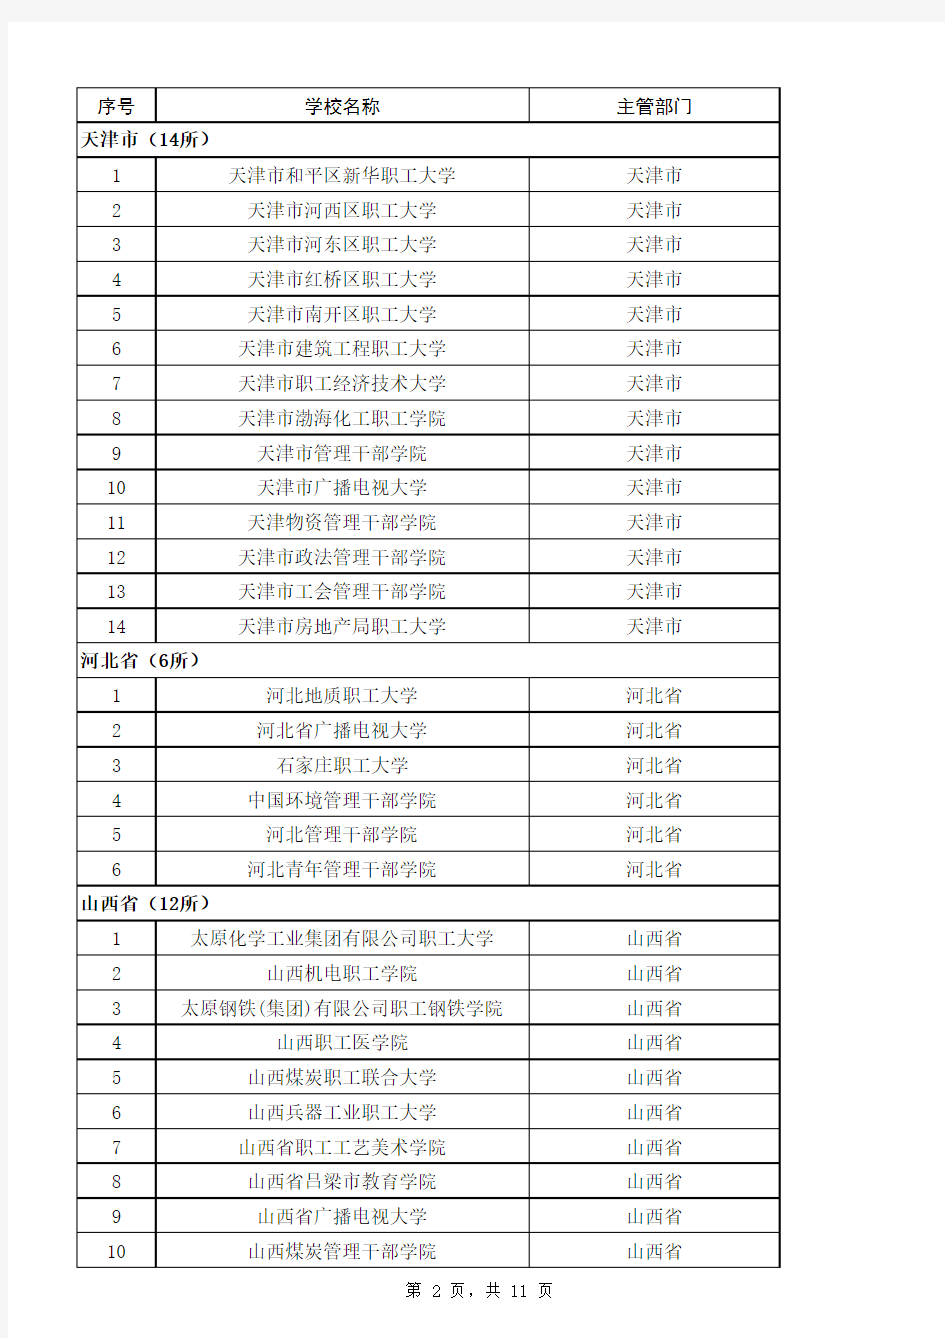 全国成人高等学校名单(共298所)xls-sheet1